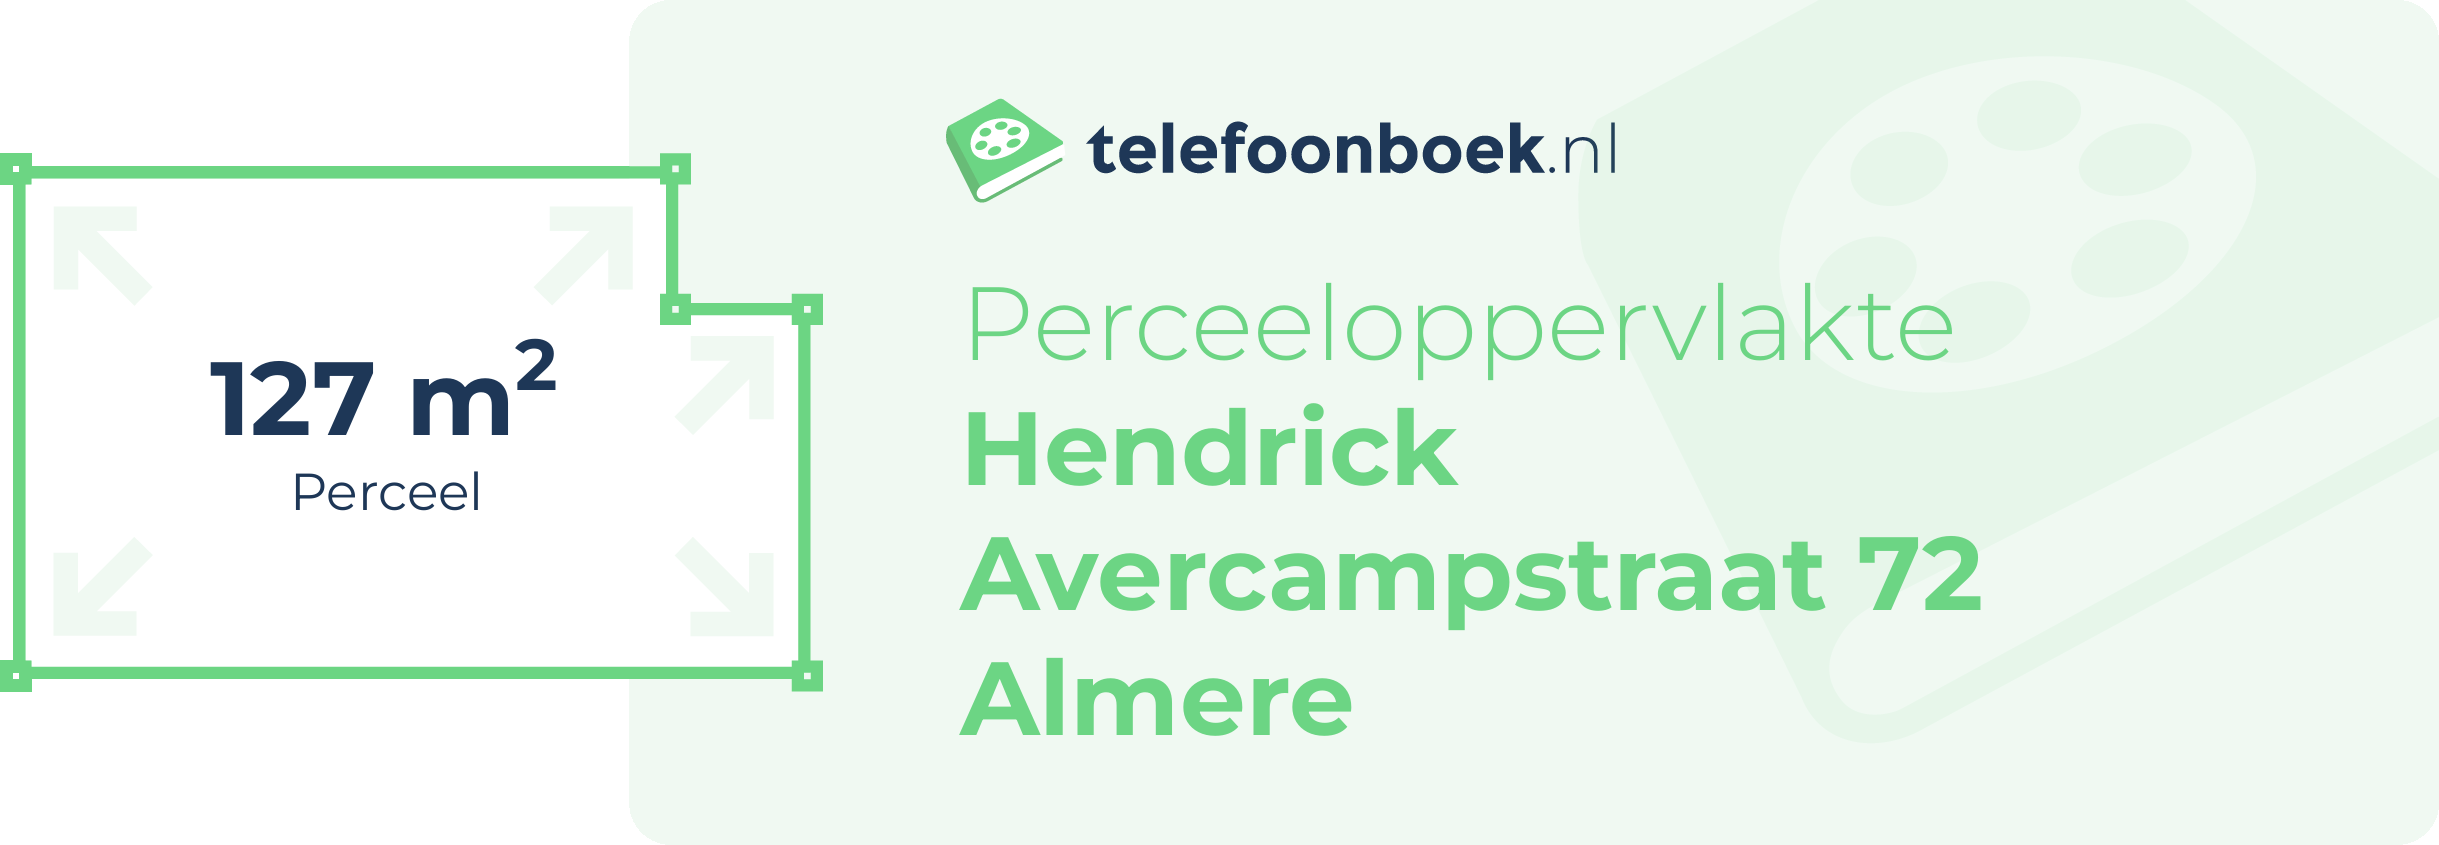 Perceeloppervlakte Hendrick Avercampstraat 72 Almere